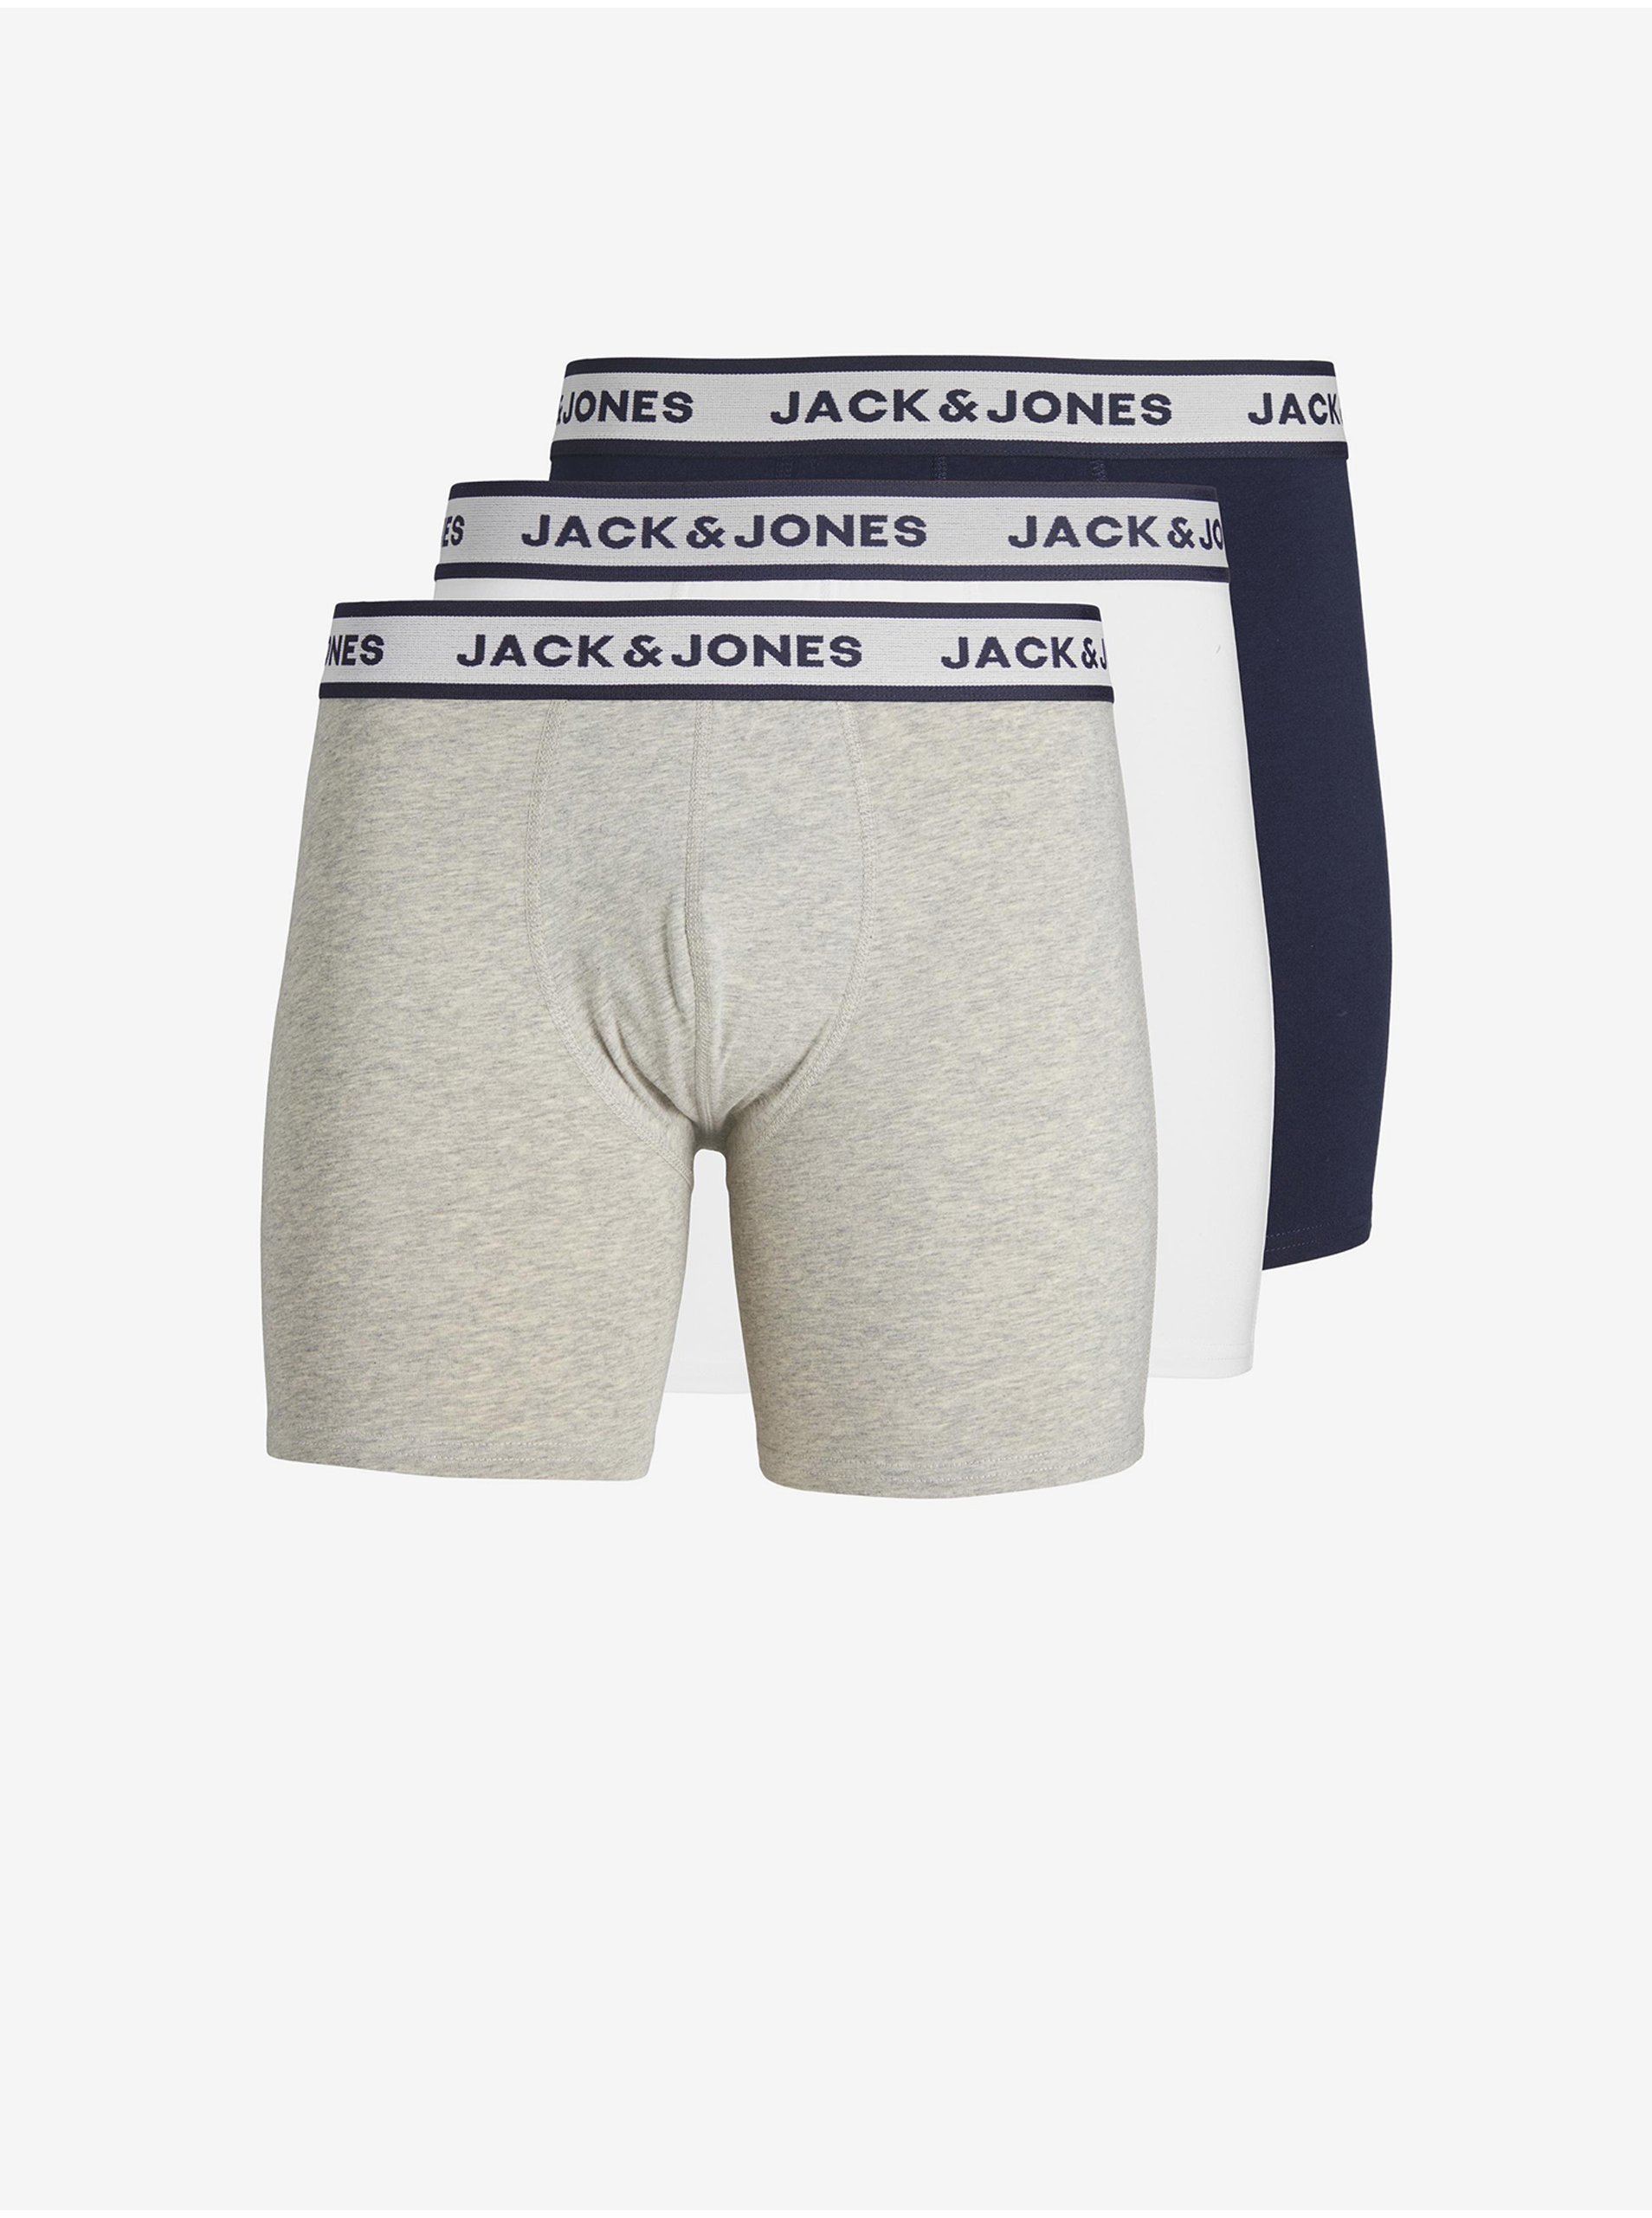 Lacno Súprava troch pánskych boxeriek vo svetlo šedej, bielej a tmavo modrej farbe Jack & Jones Solid